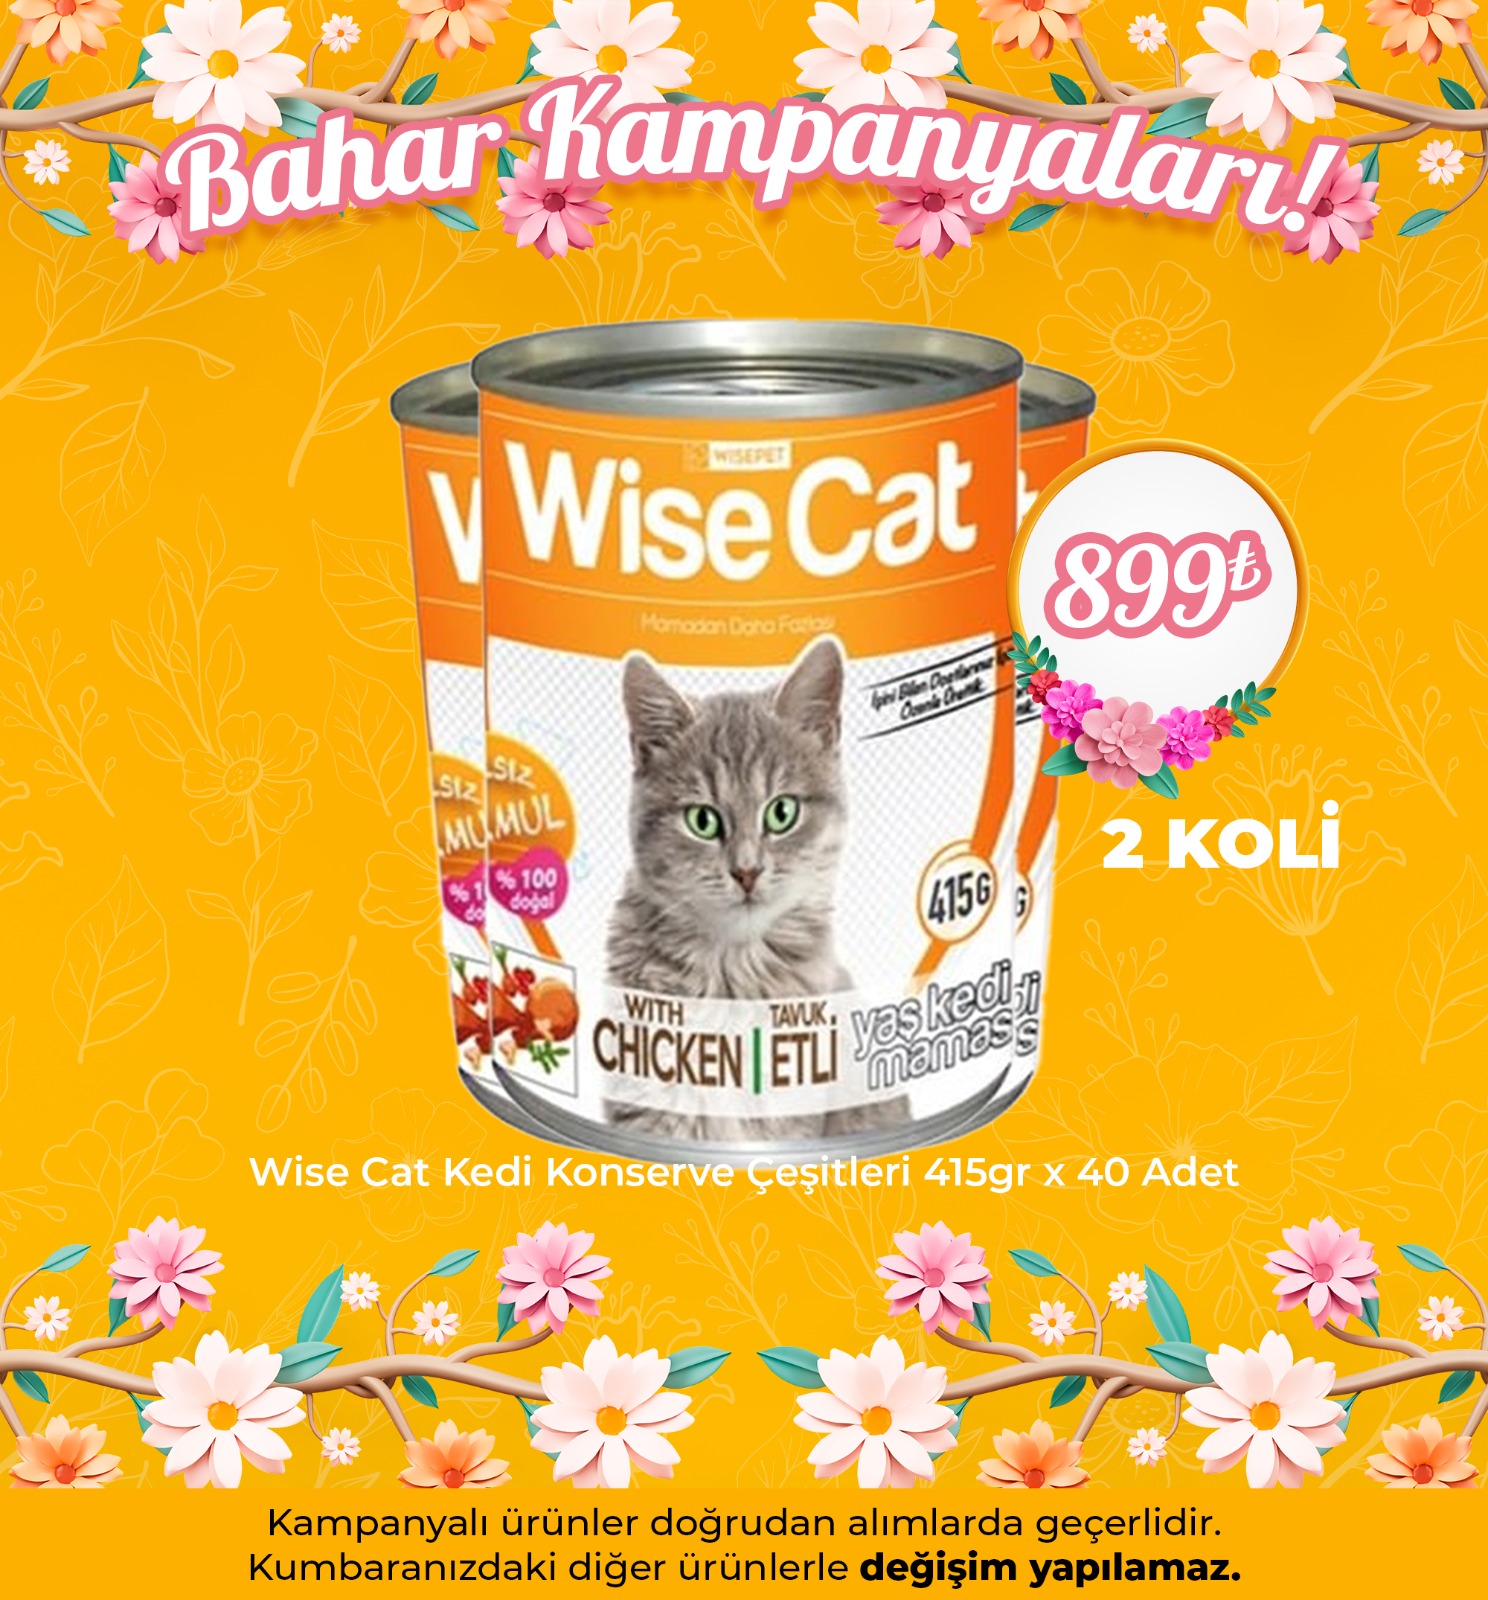 Wise Cat Kedi Konserve Çeşitleri 415gr x 40 Adet ( Avantaj Paketi )